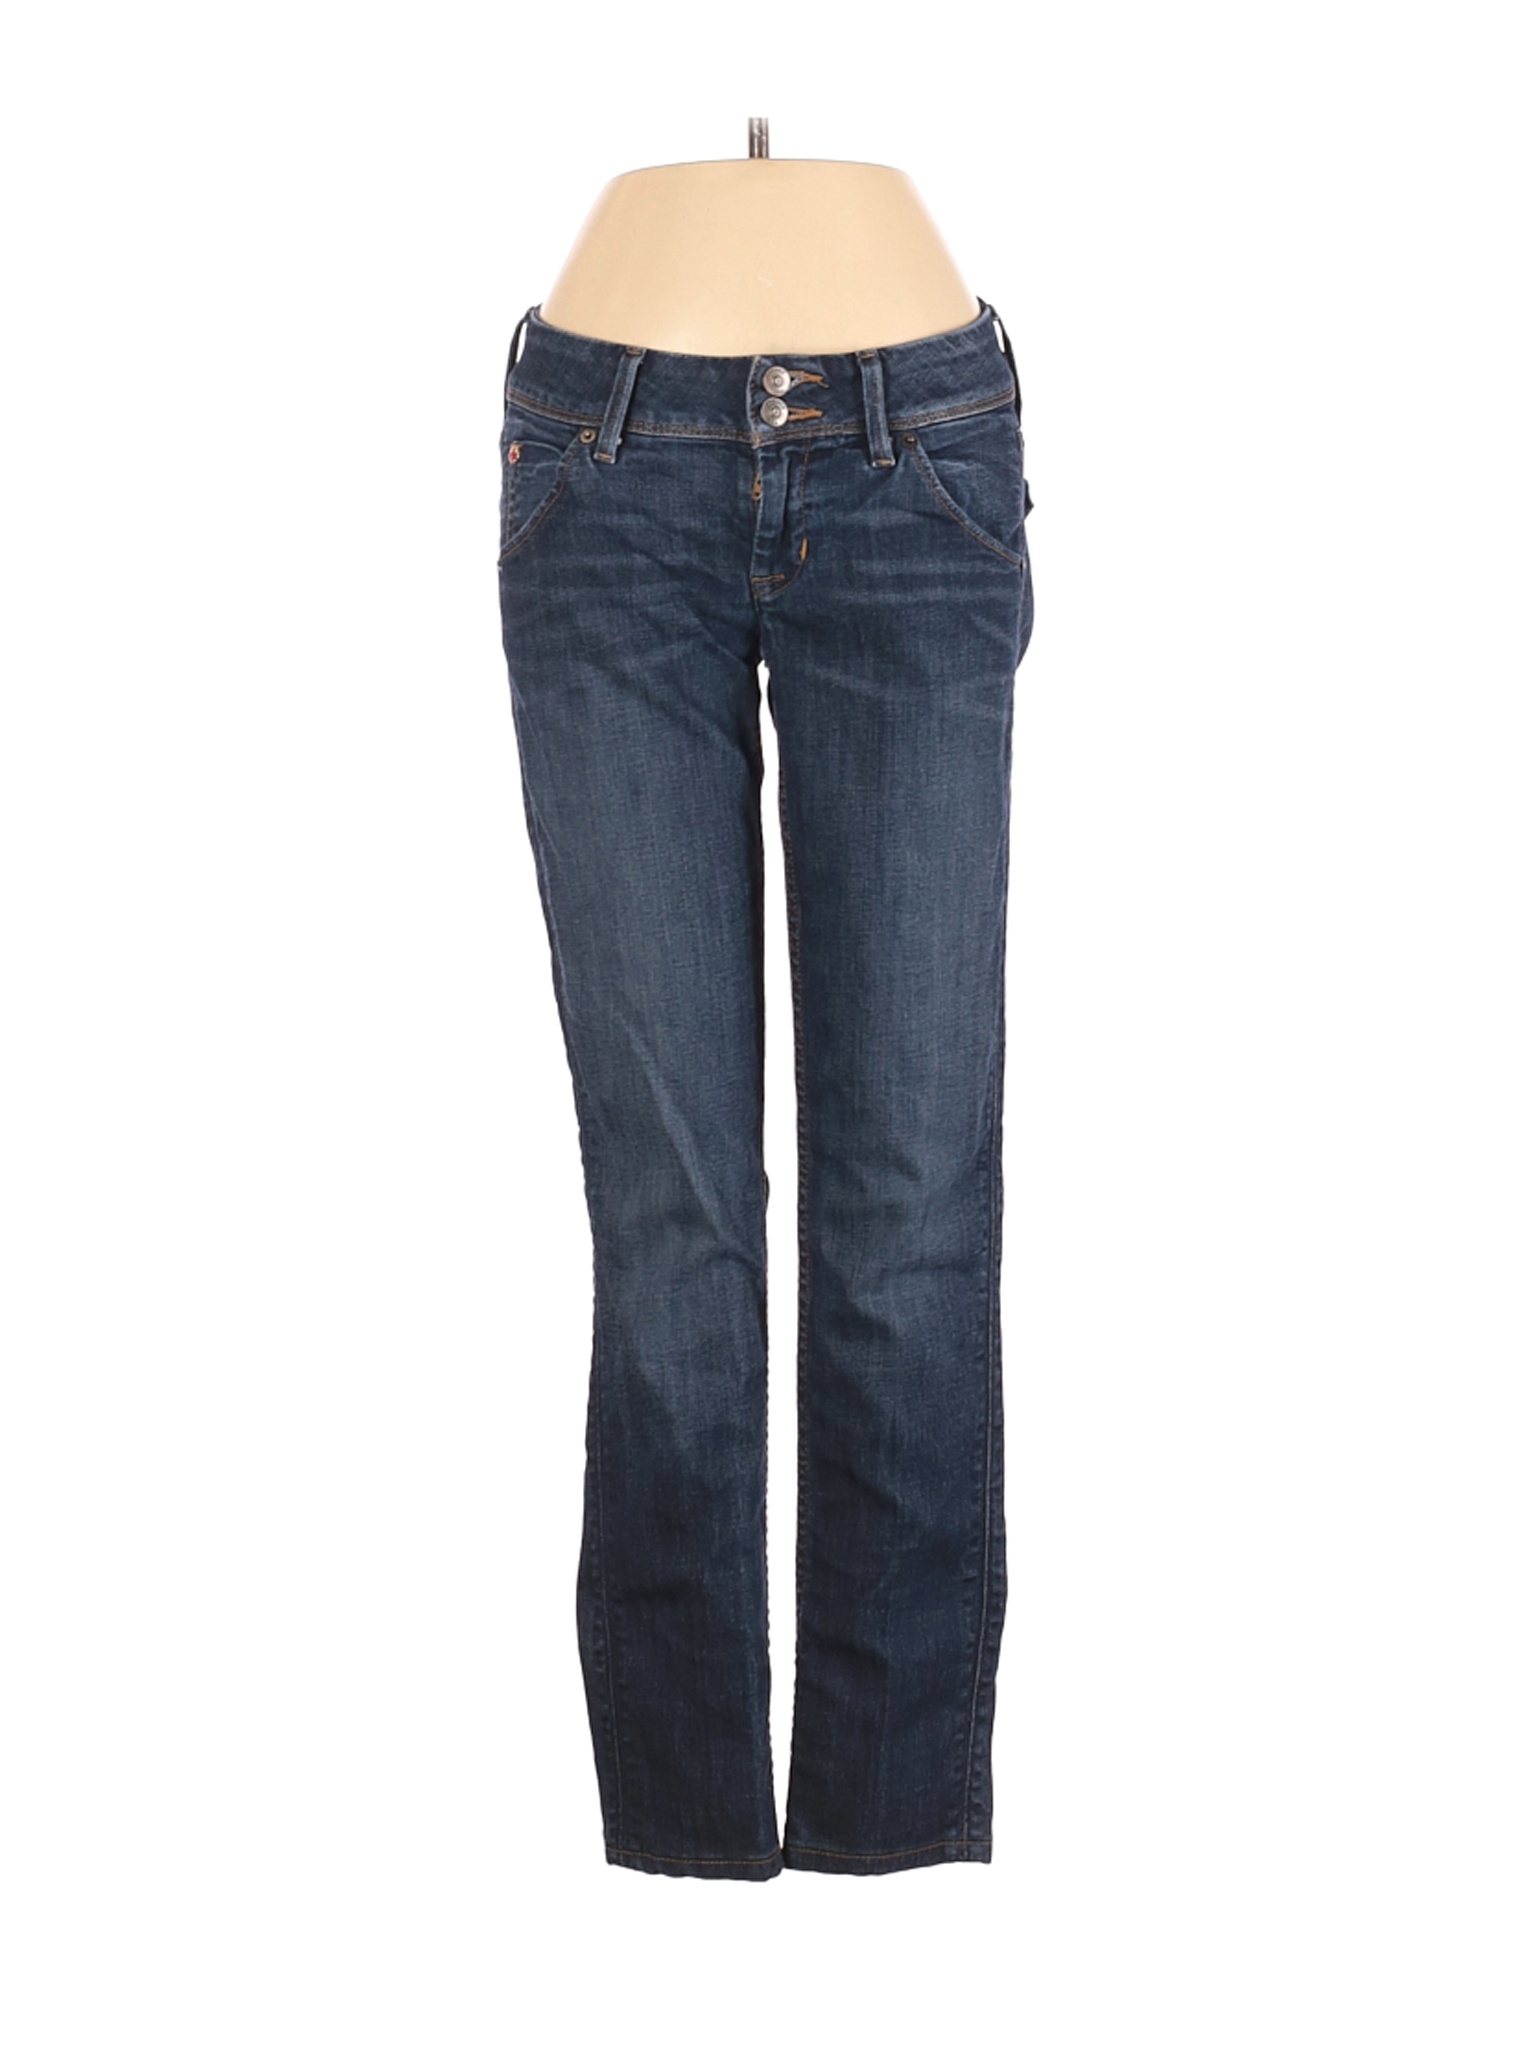 Hudson Jeans Women Blue Jeans 24W | eBay